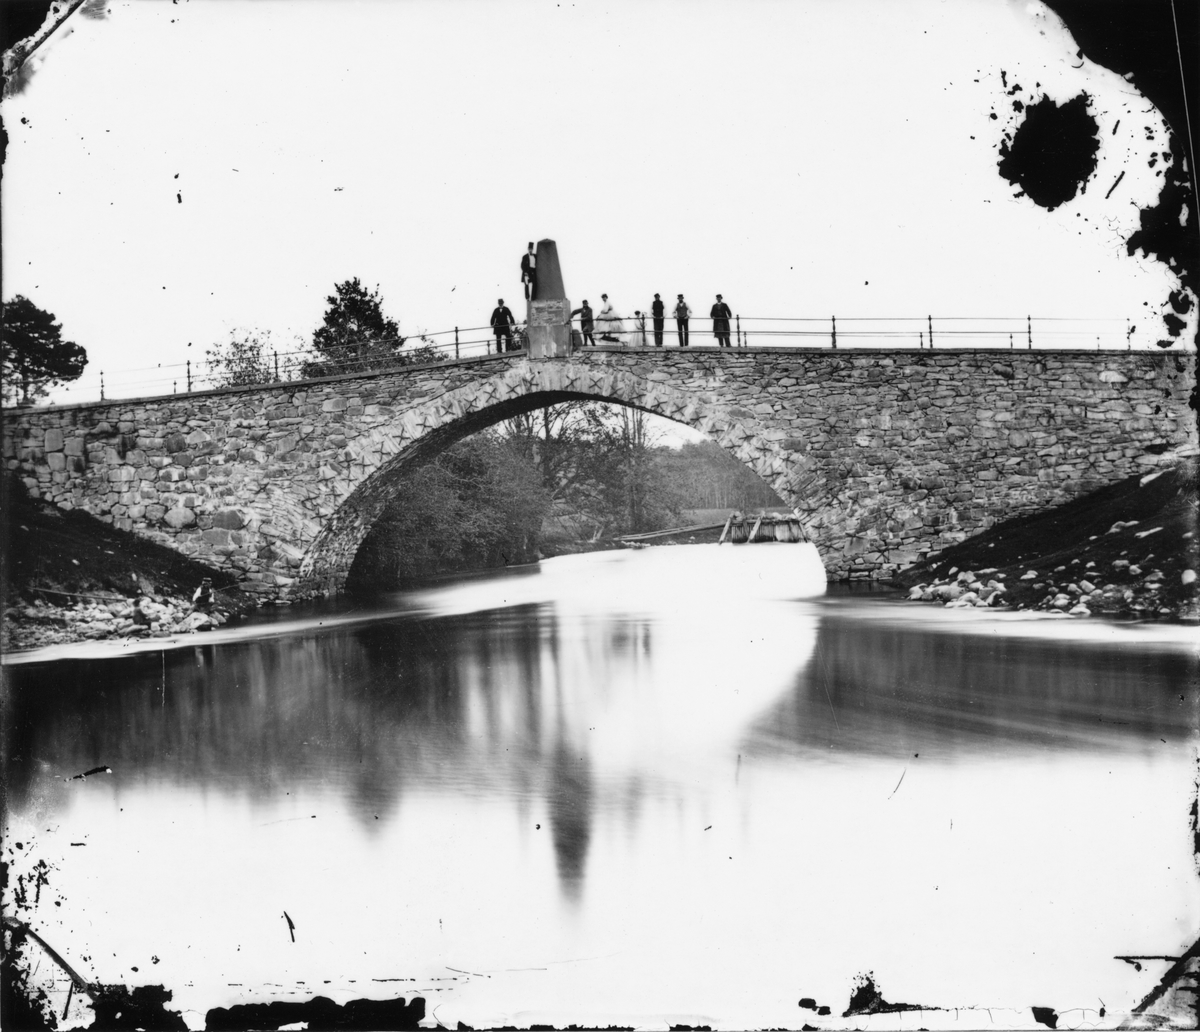 Gustafsbro utanför Gävle. 1860-talet.
Foto: Amanad Gussander